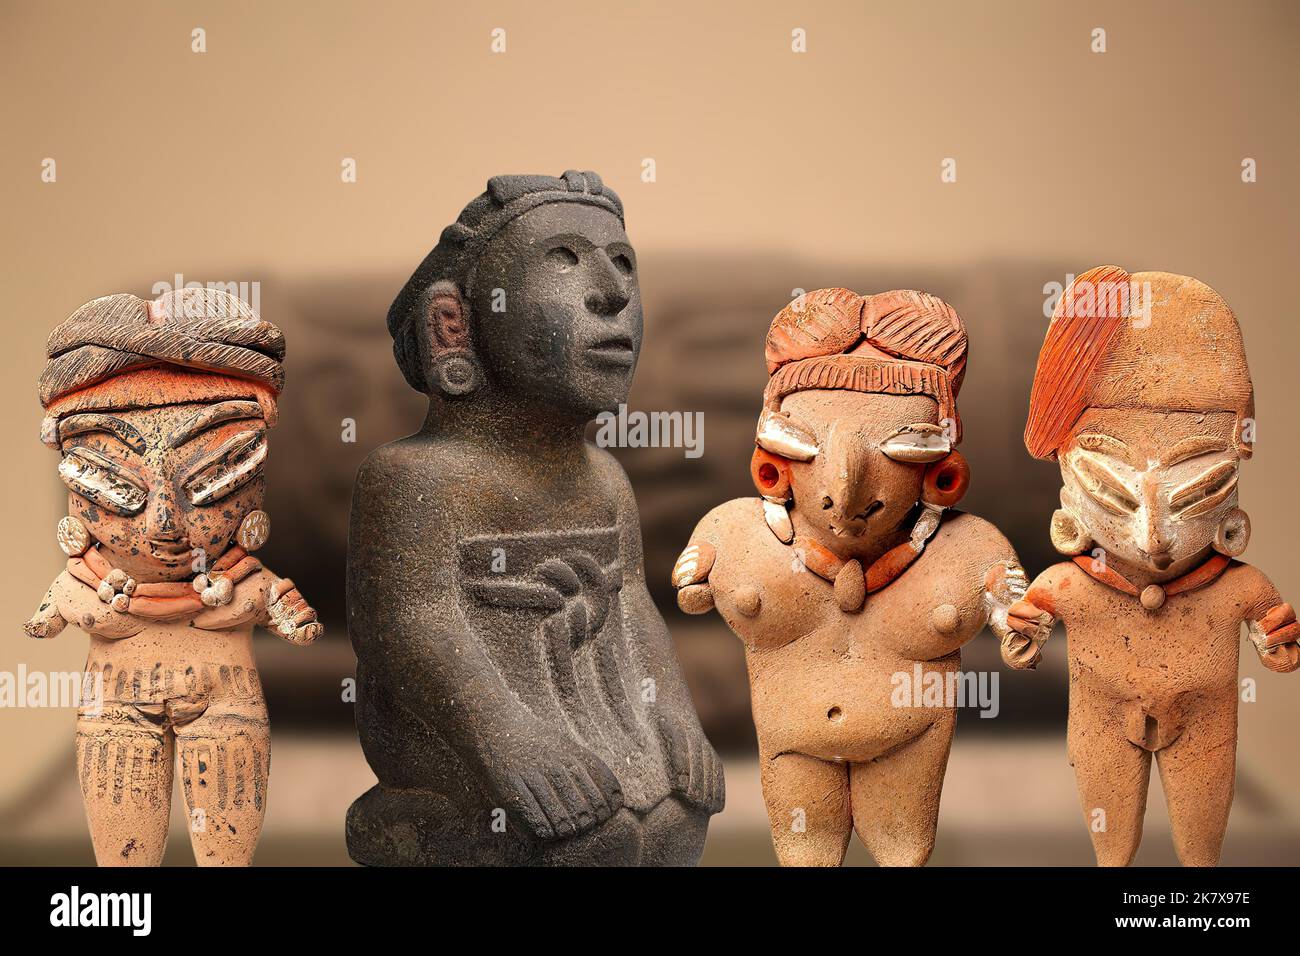 Aztec Art - Four Aztec statuettes representing female figures Stock Photo